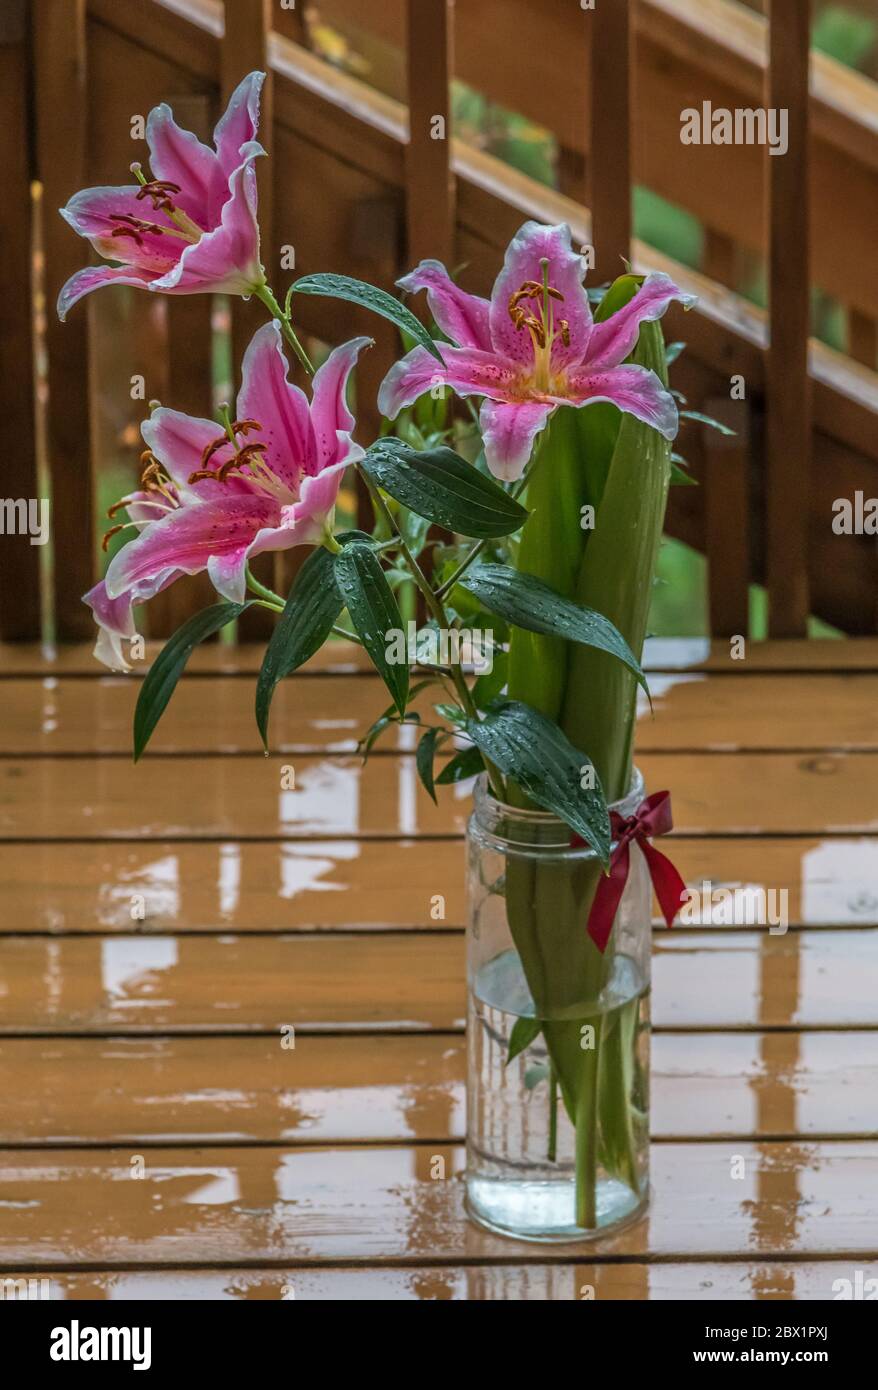 Rosa delicato daylily dopo una pioggia sul ponte di legno. Foto Stock